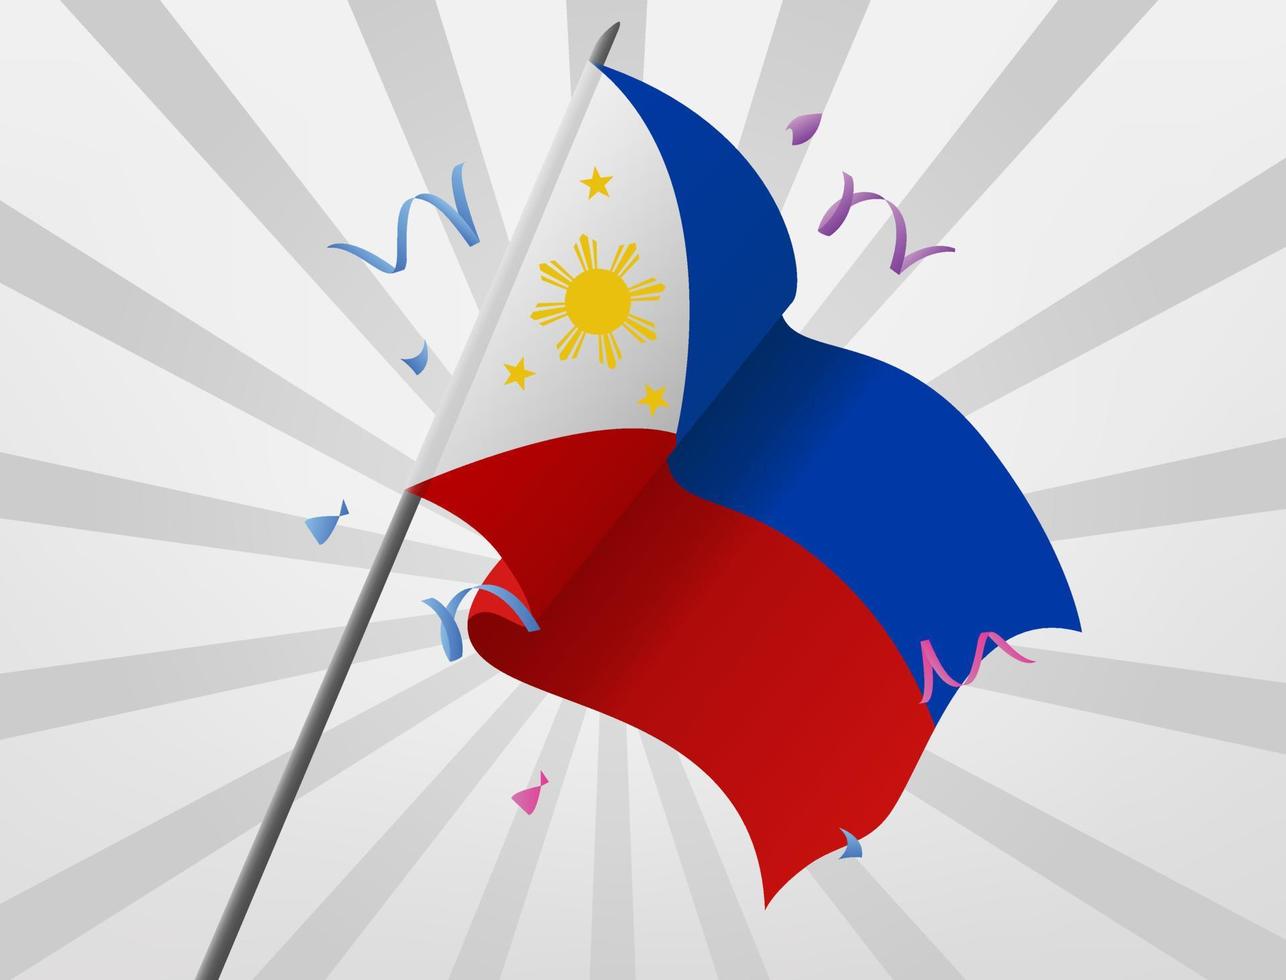 den filippinska firandet flaggan vajade på en höjd vektor